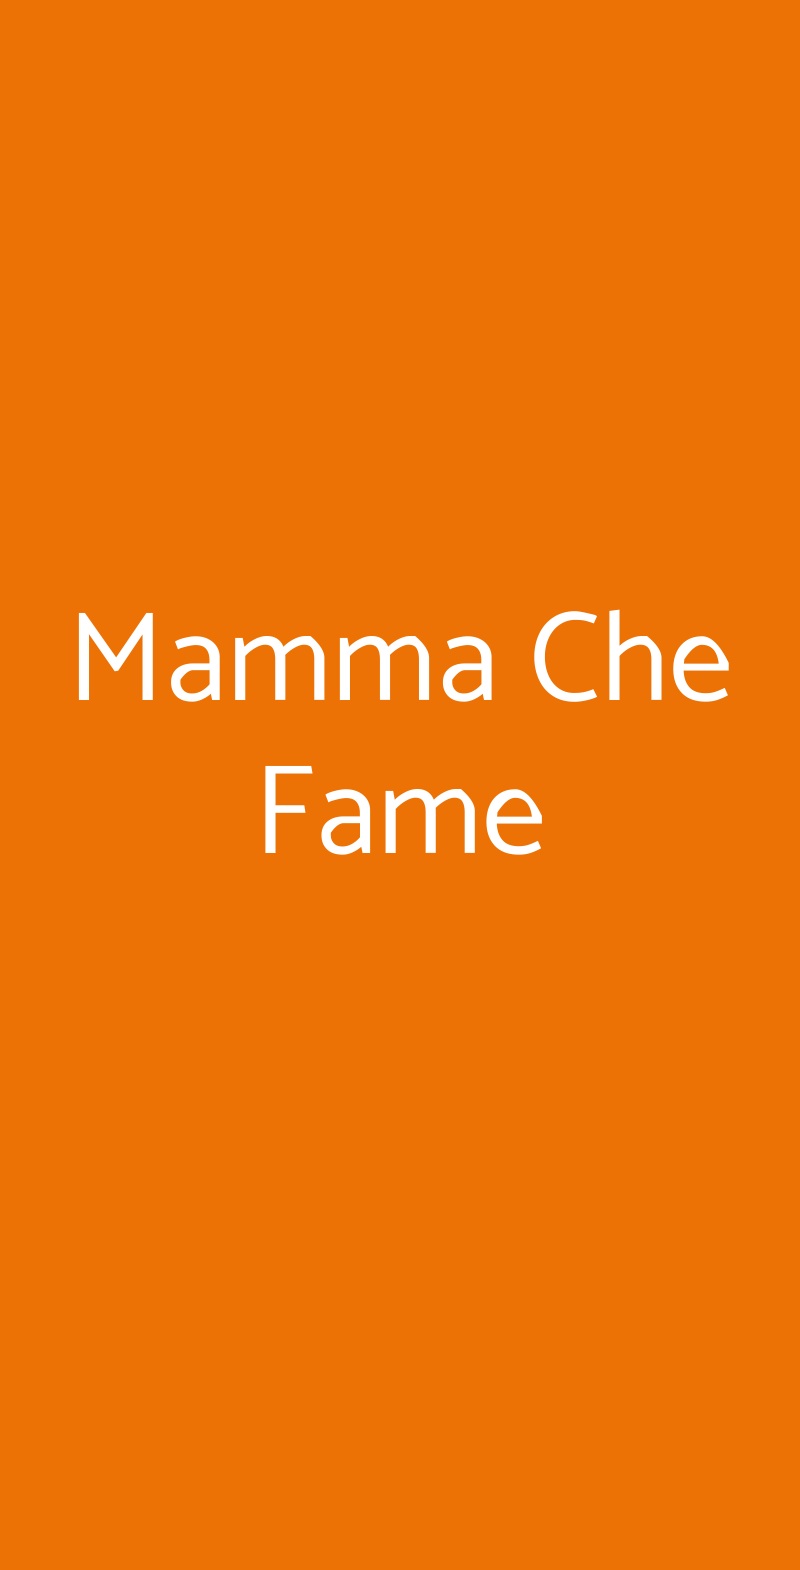 Mamma Che Fame Sesto Fiorentino menù 1 pagina